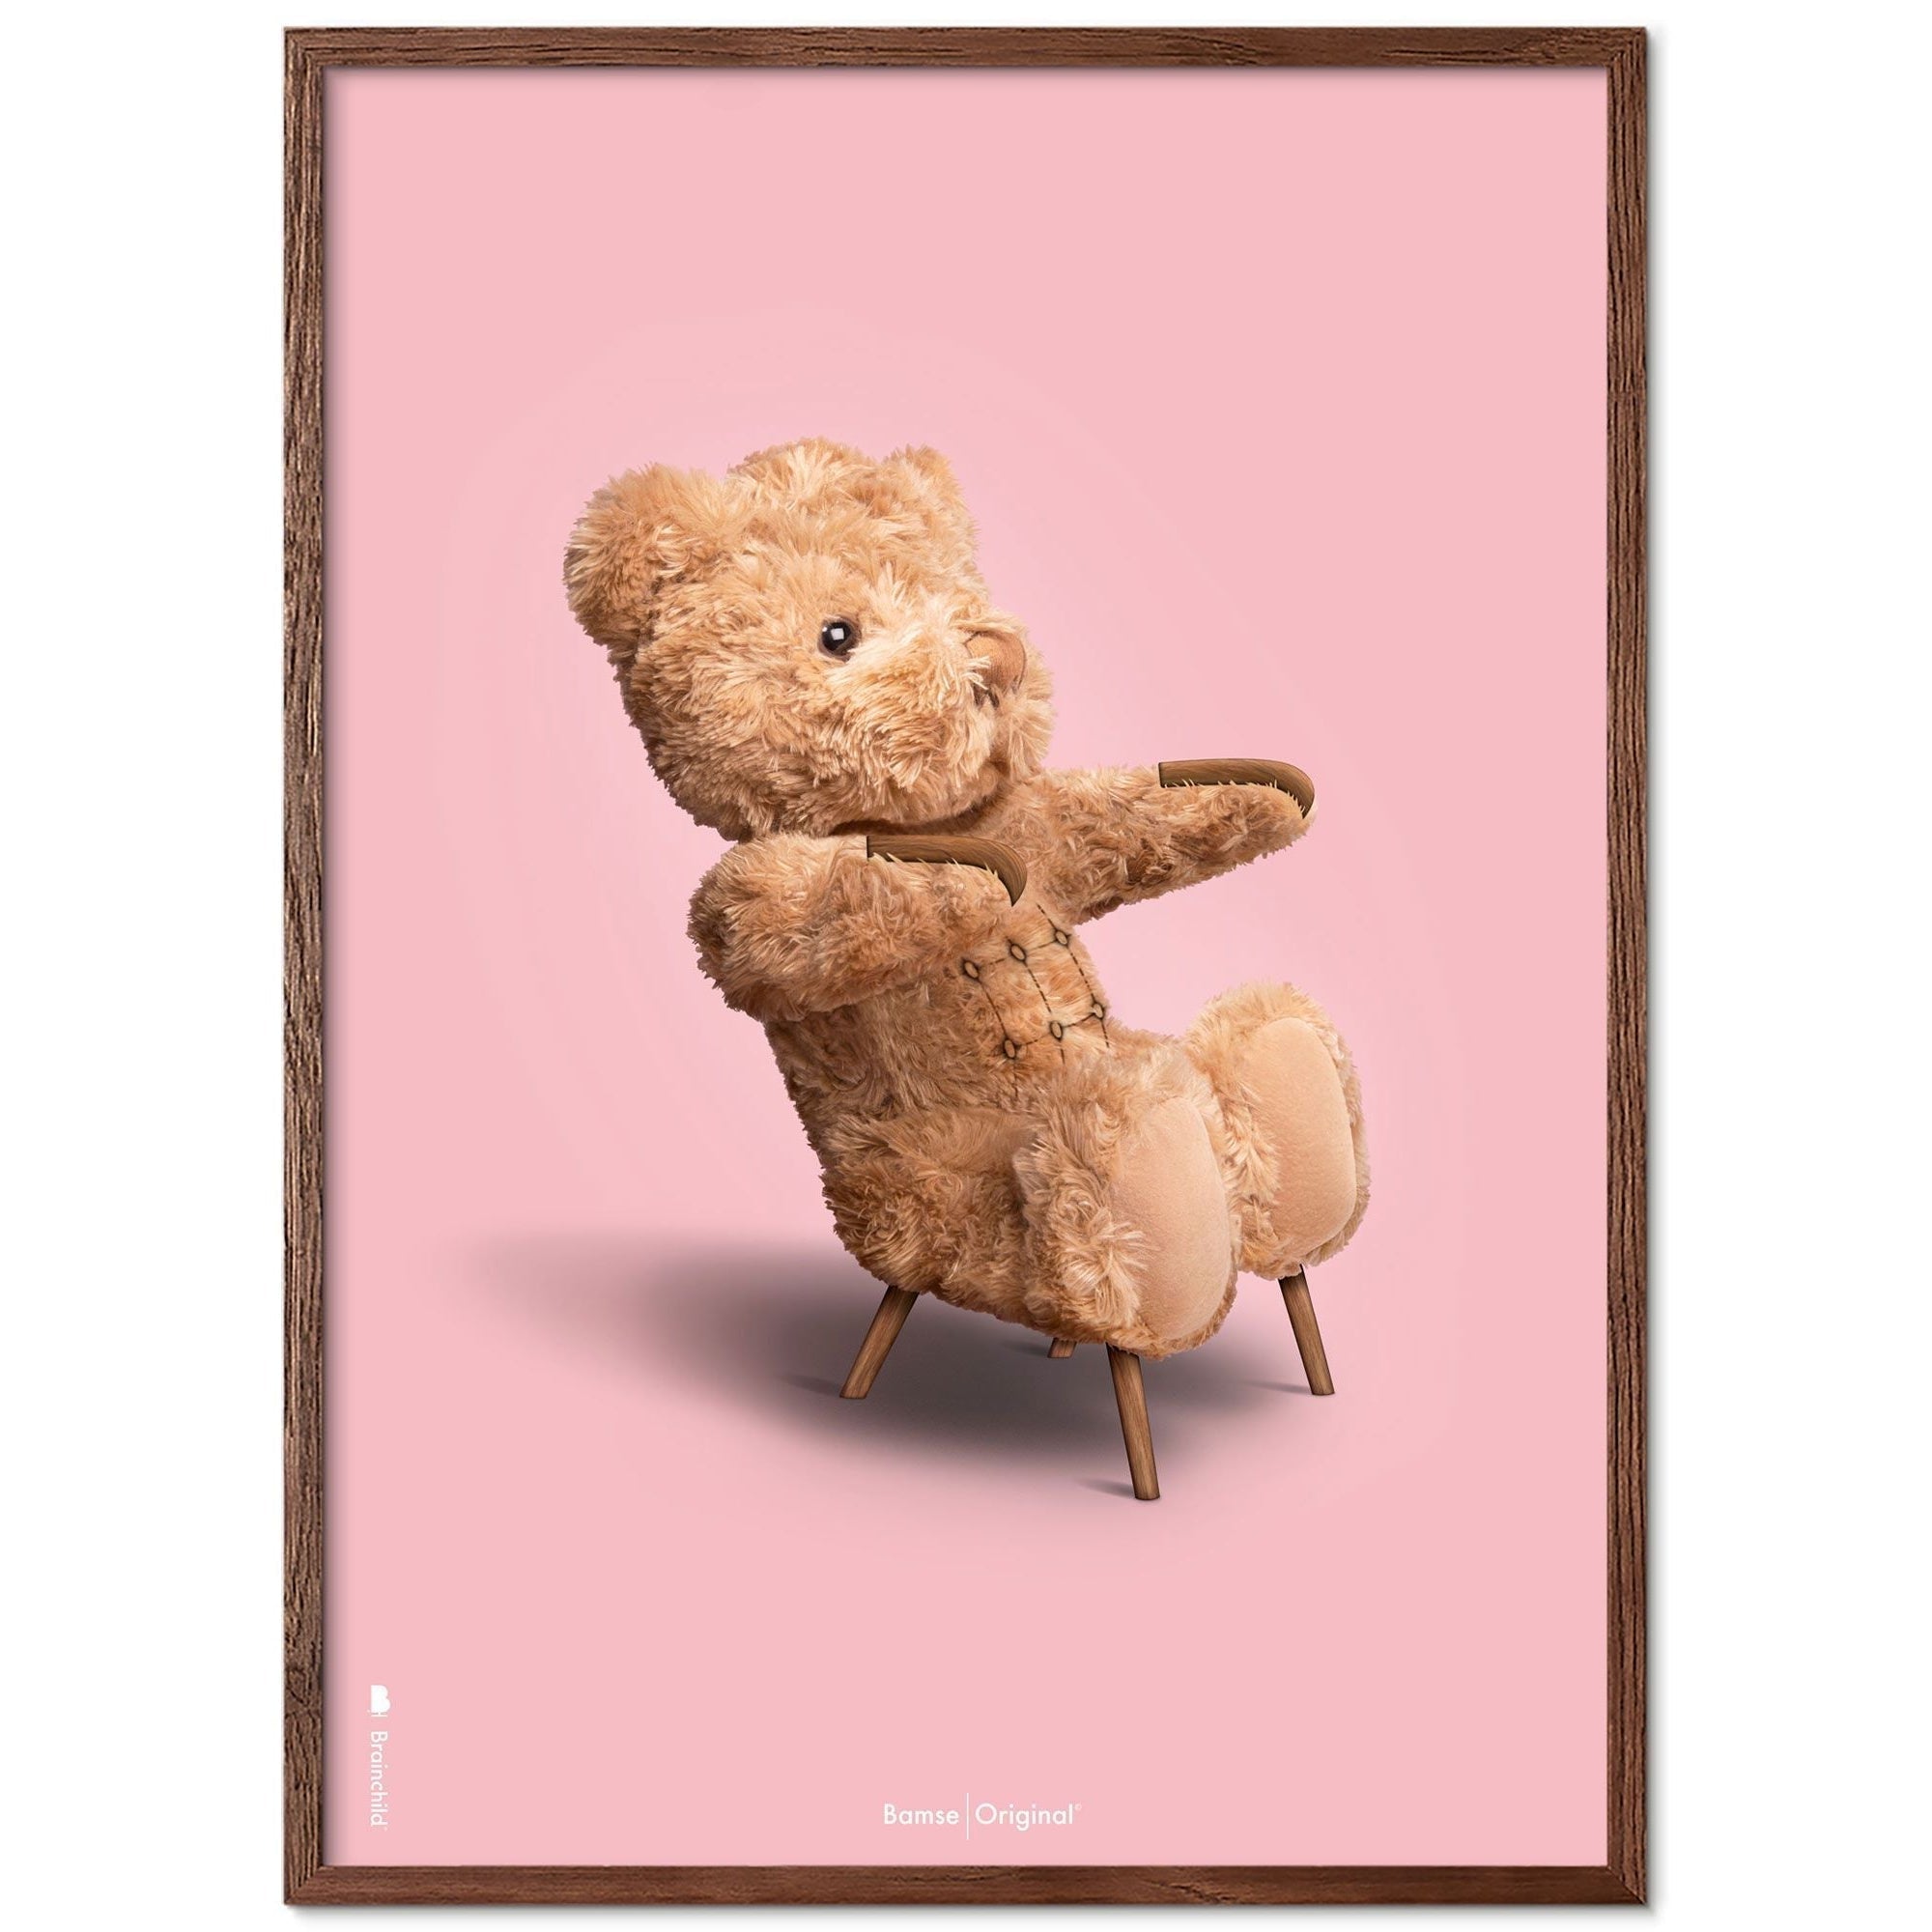 Marco de póster clásico de BrainChild Teddy Bear Hecho de Ram de madera oscura 70x100 cm, fondo rosa